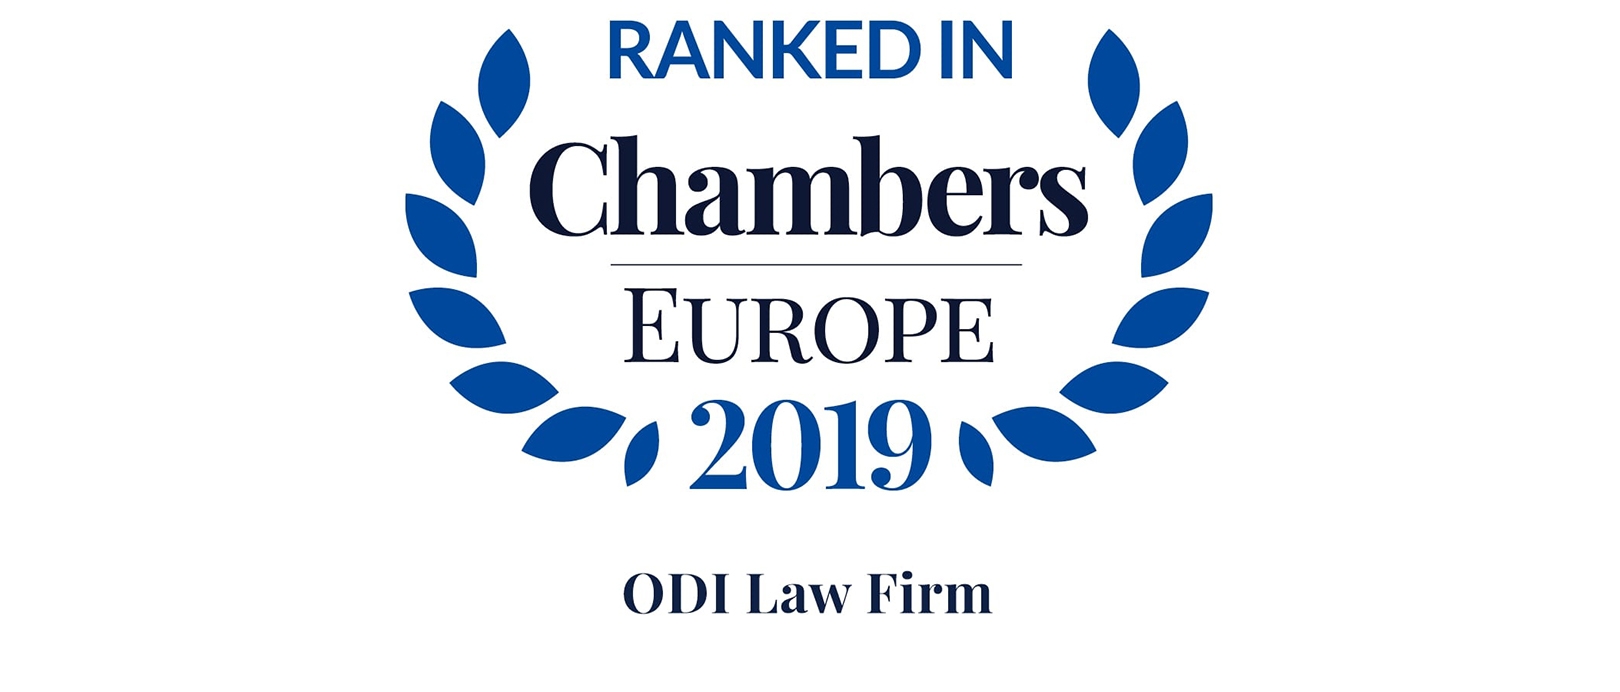 ODI ranked in Chambers Europe 2019